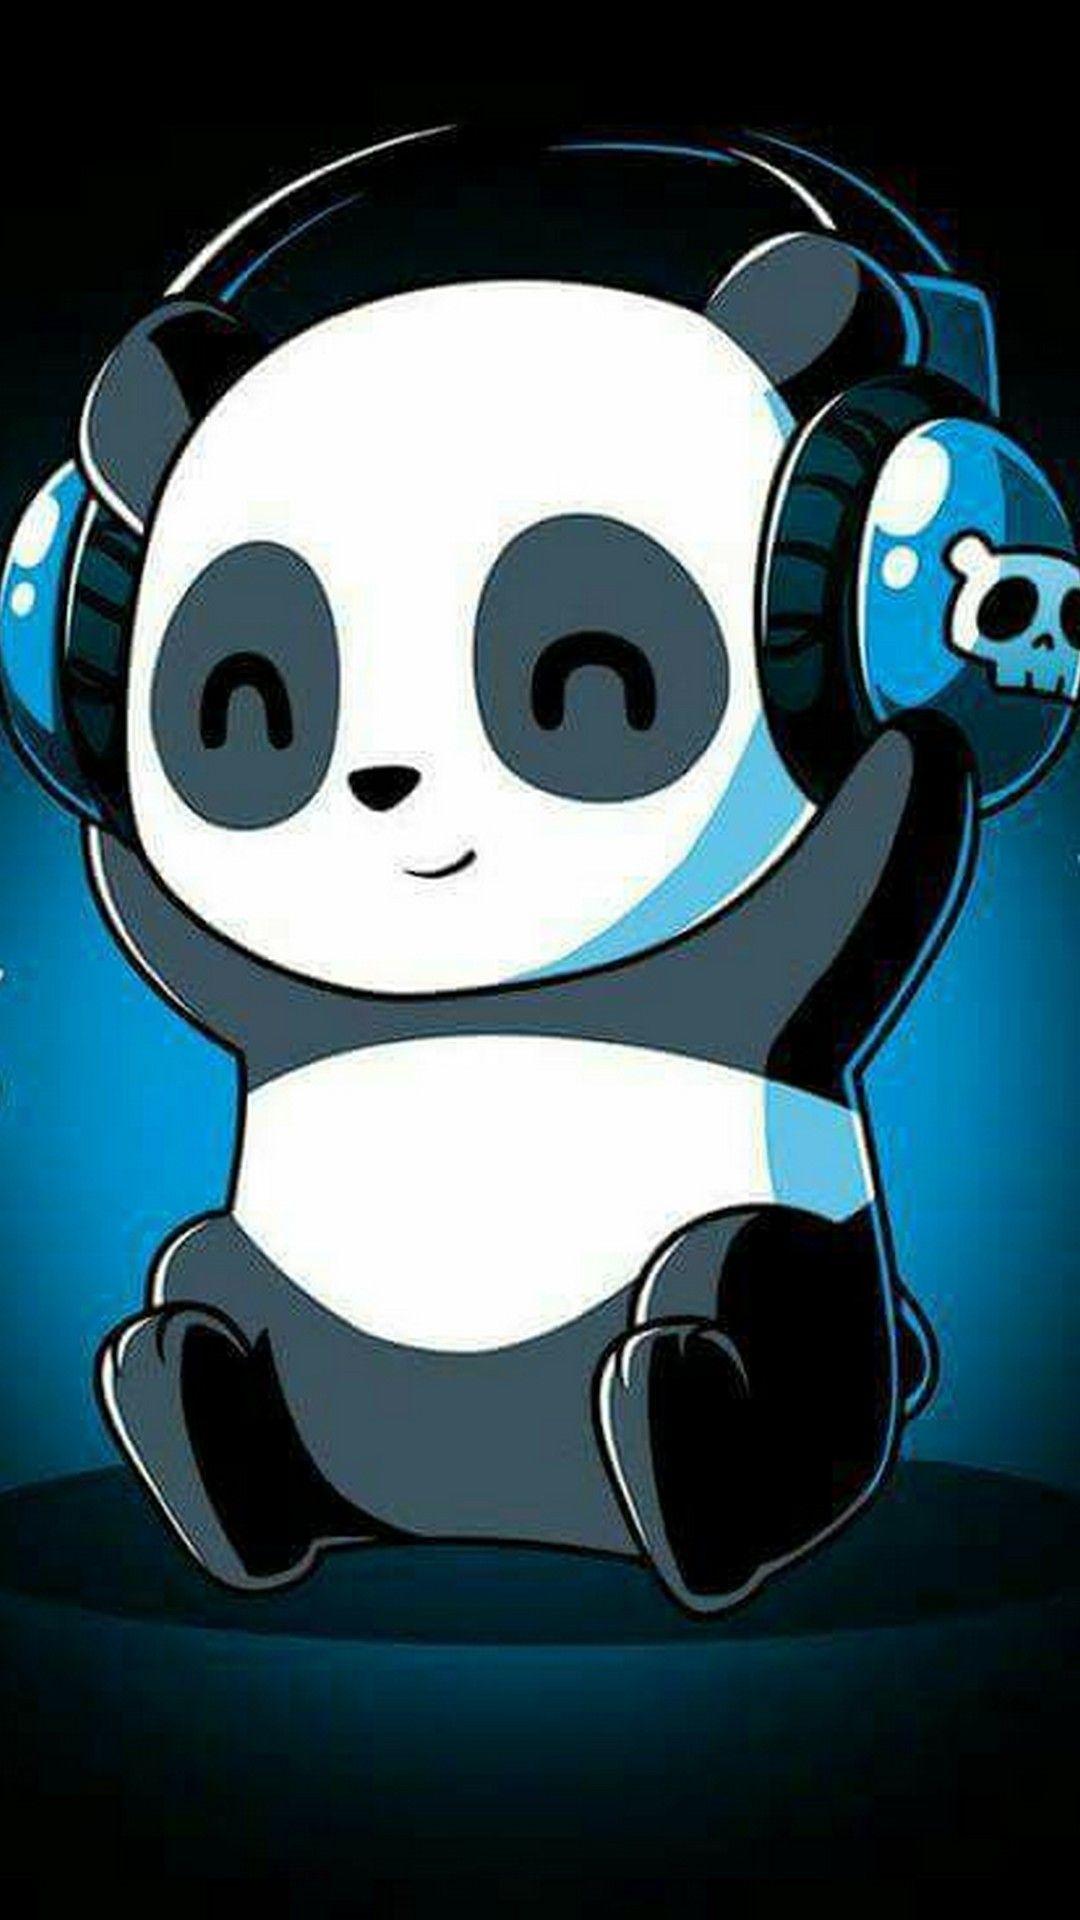 Cute Panda Cartoon Wallpaper Hd ~ Small Cute Cartoon Panda Wallpapers ...